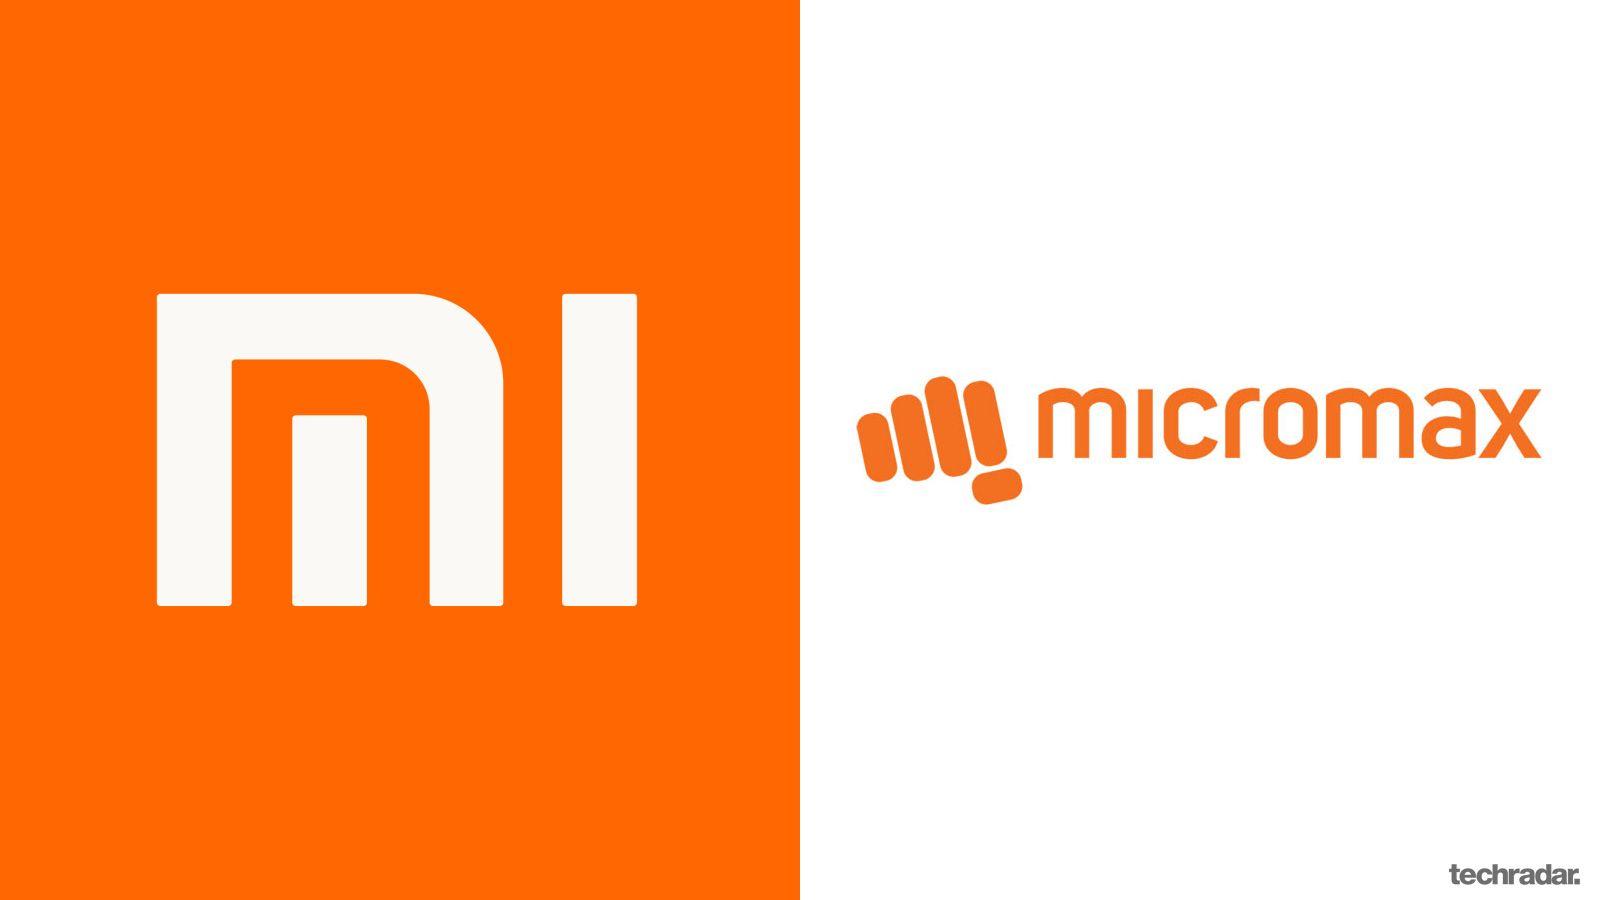 Micromax Logo - Xiaomi vs Micromax: A tale of two smartphone brands | TechRadar